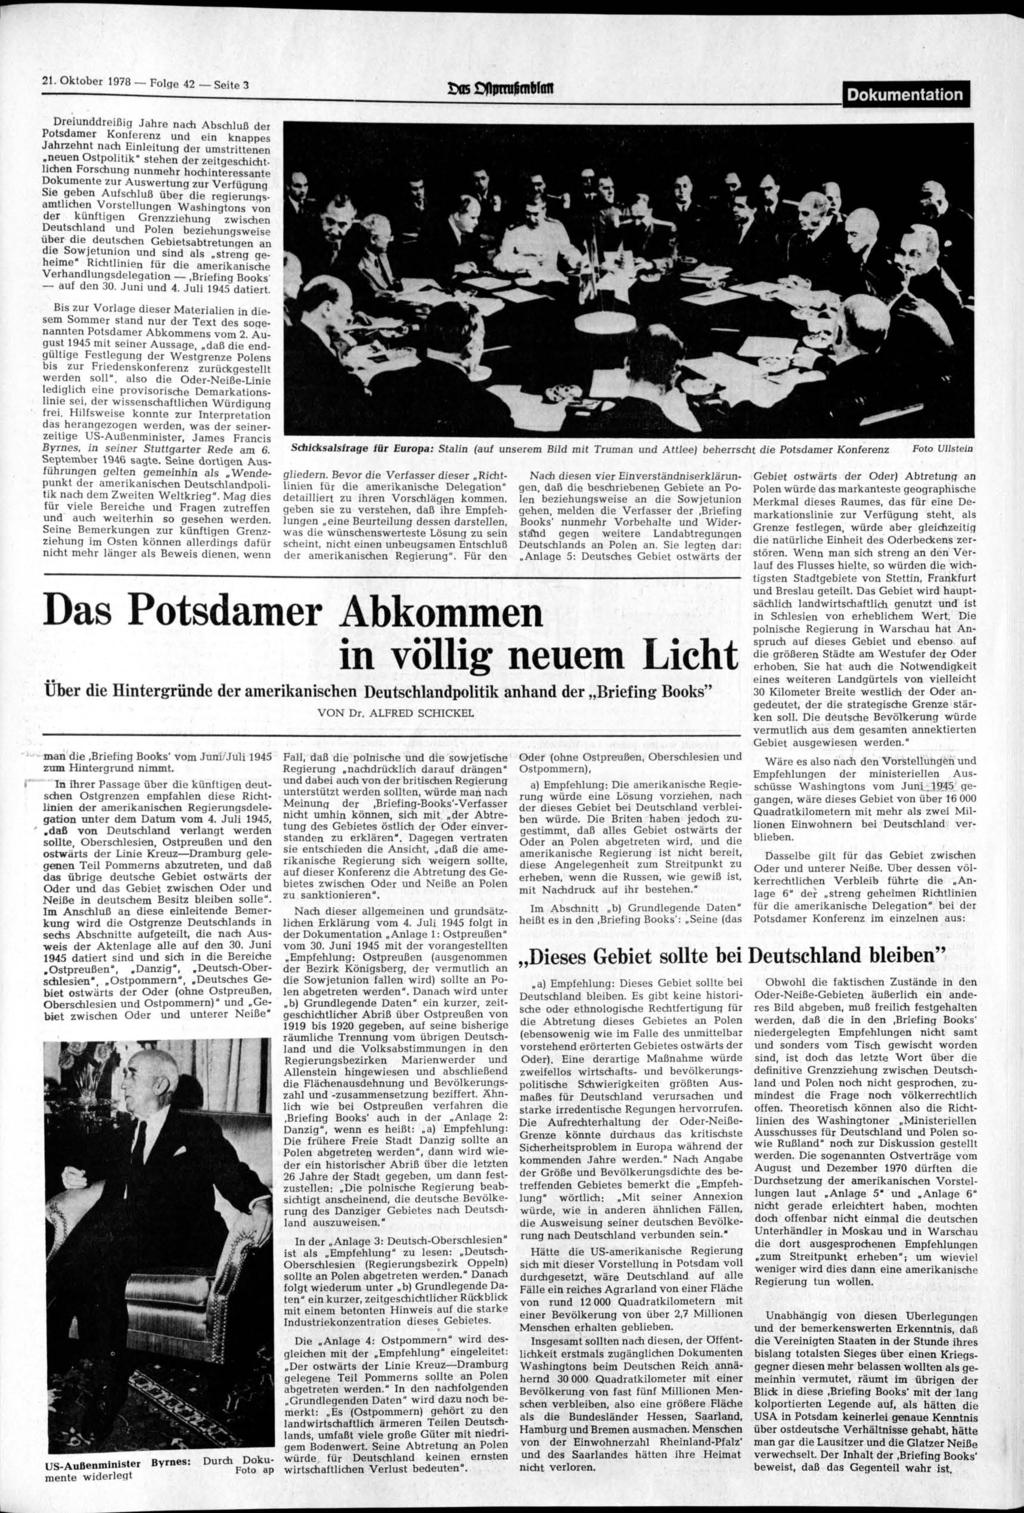 21 Oktober 1978 Folge 42 Seite 3 Dokumentation Dreiunddreißig Jahre nach Abschluß der Potsdamer Konferenz